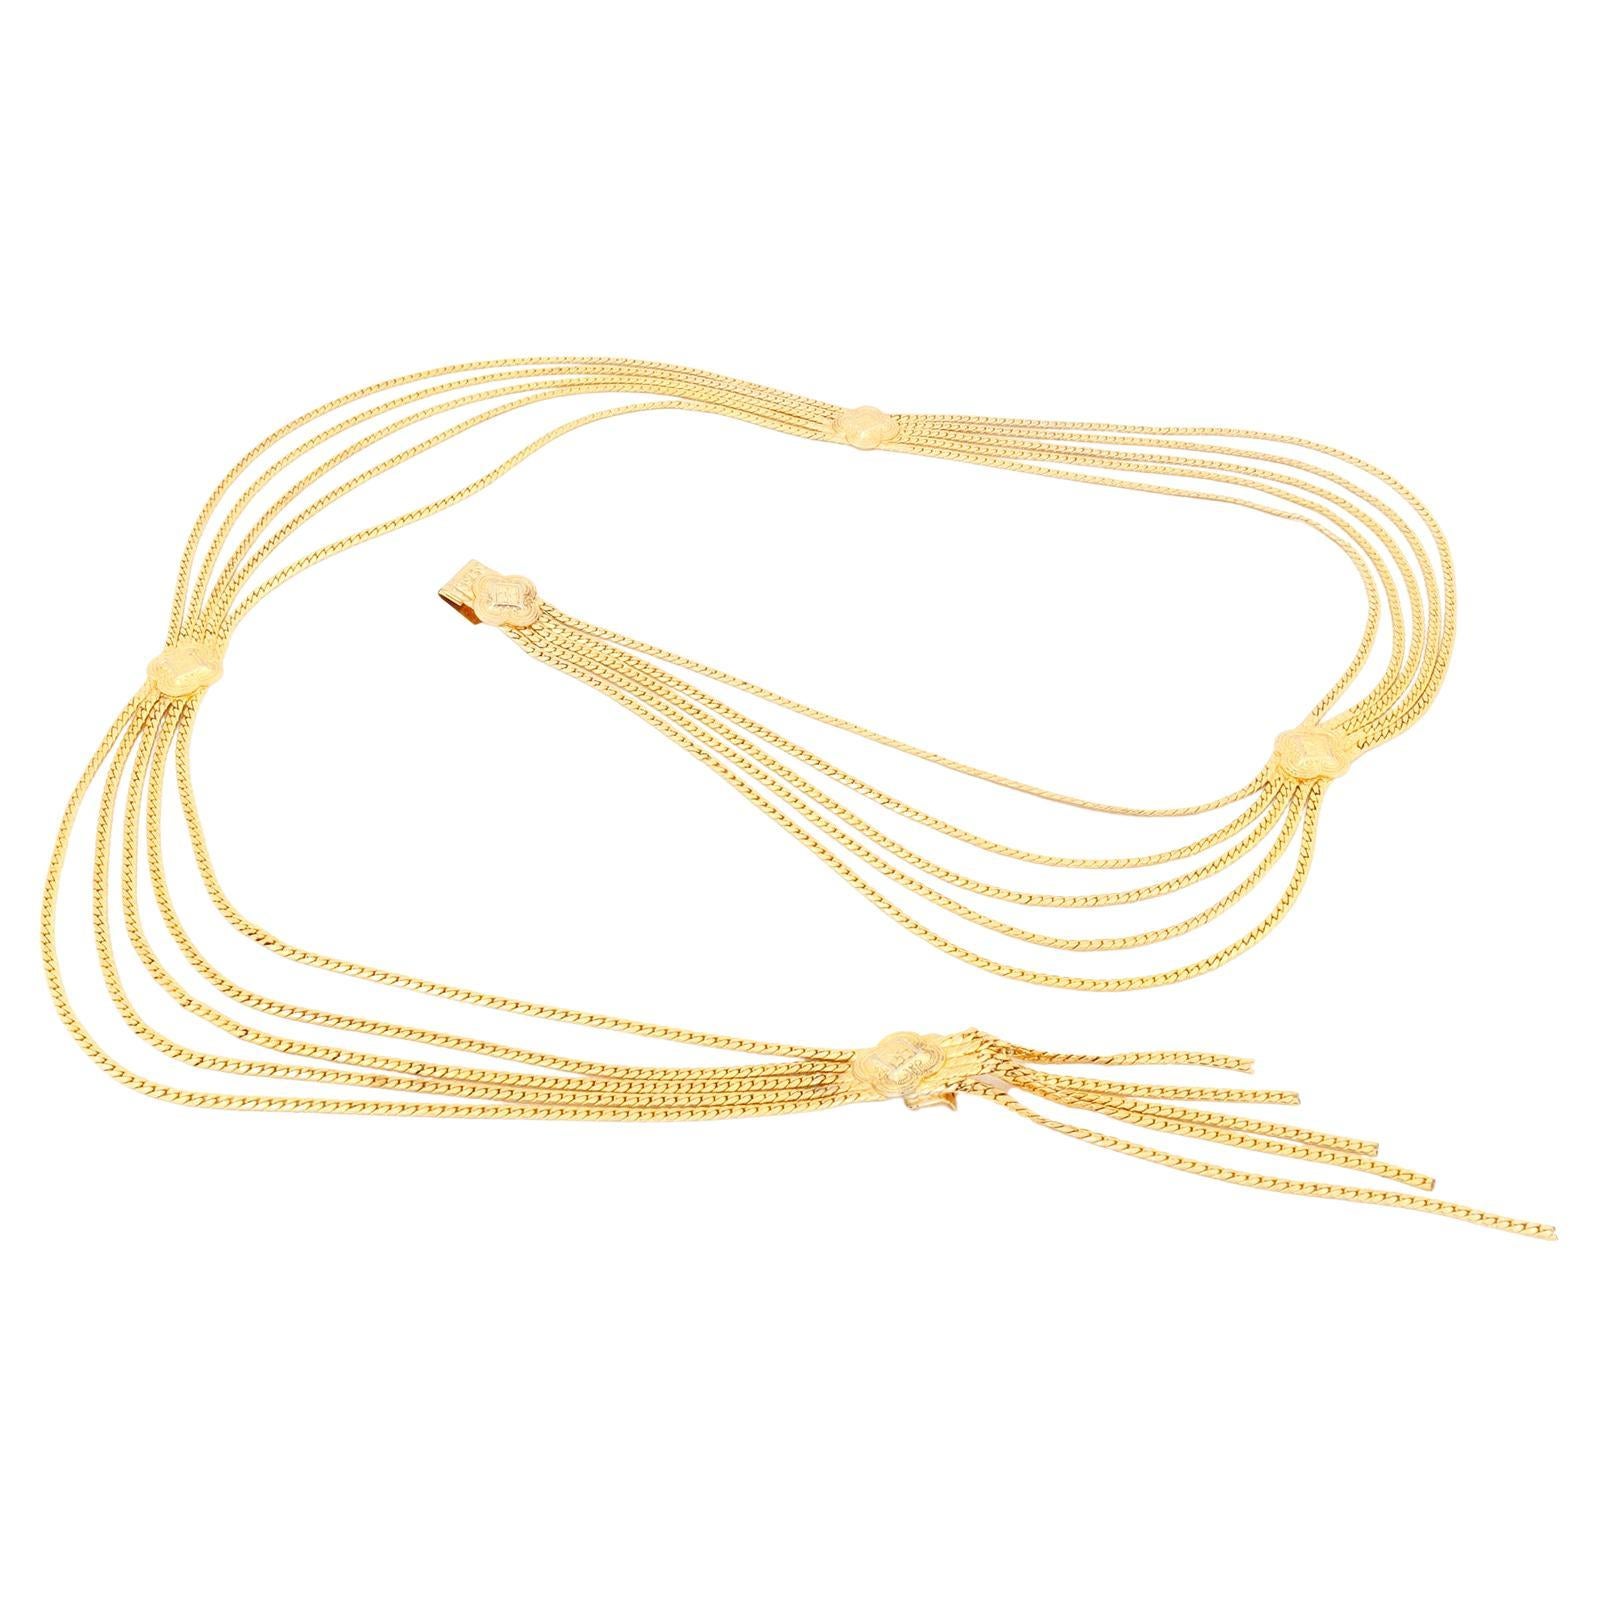 Mehrreihiger Goldmedaillon-Gürtel oder Halskette von Christian Dior, Christian Dior